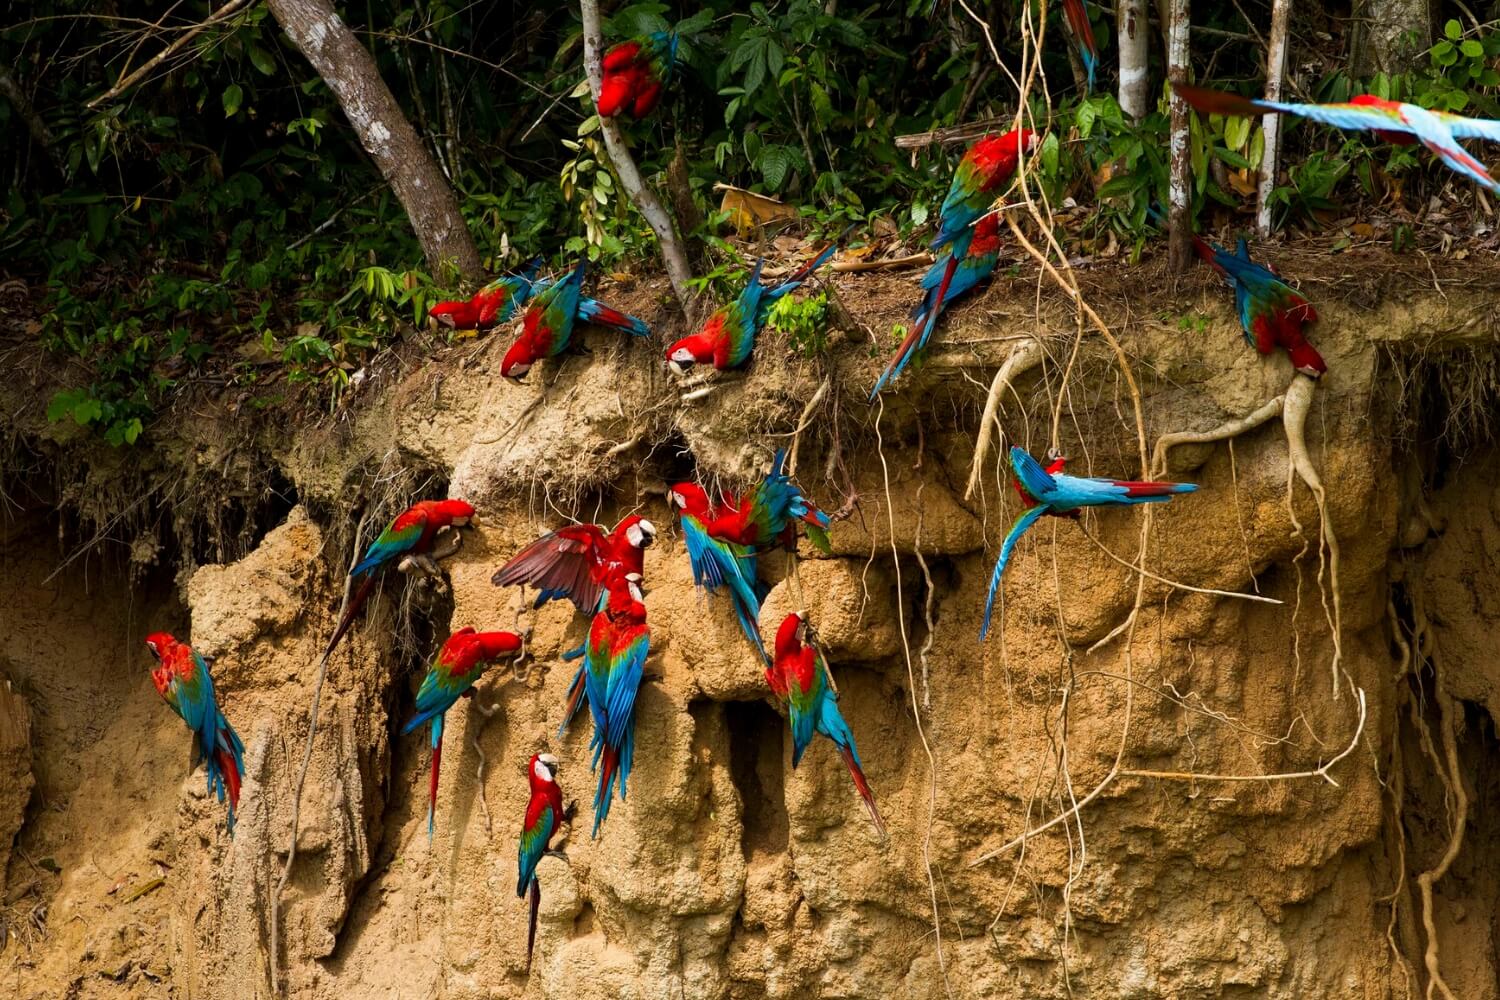 Réserve naturelle de Tambopata : l'un des sites touristiques les plus recommandés de la jungle péruvienne